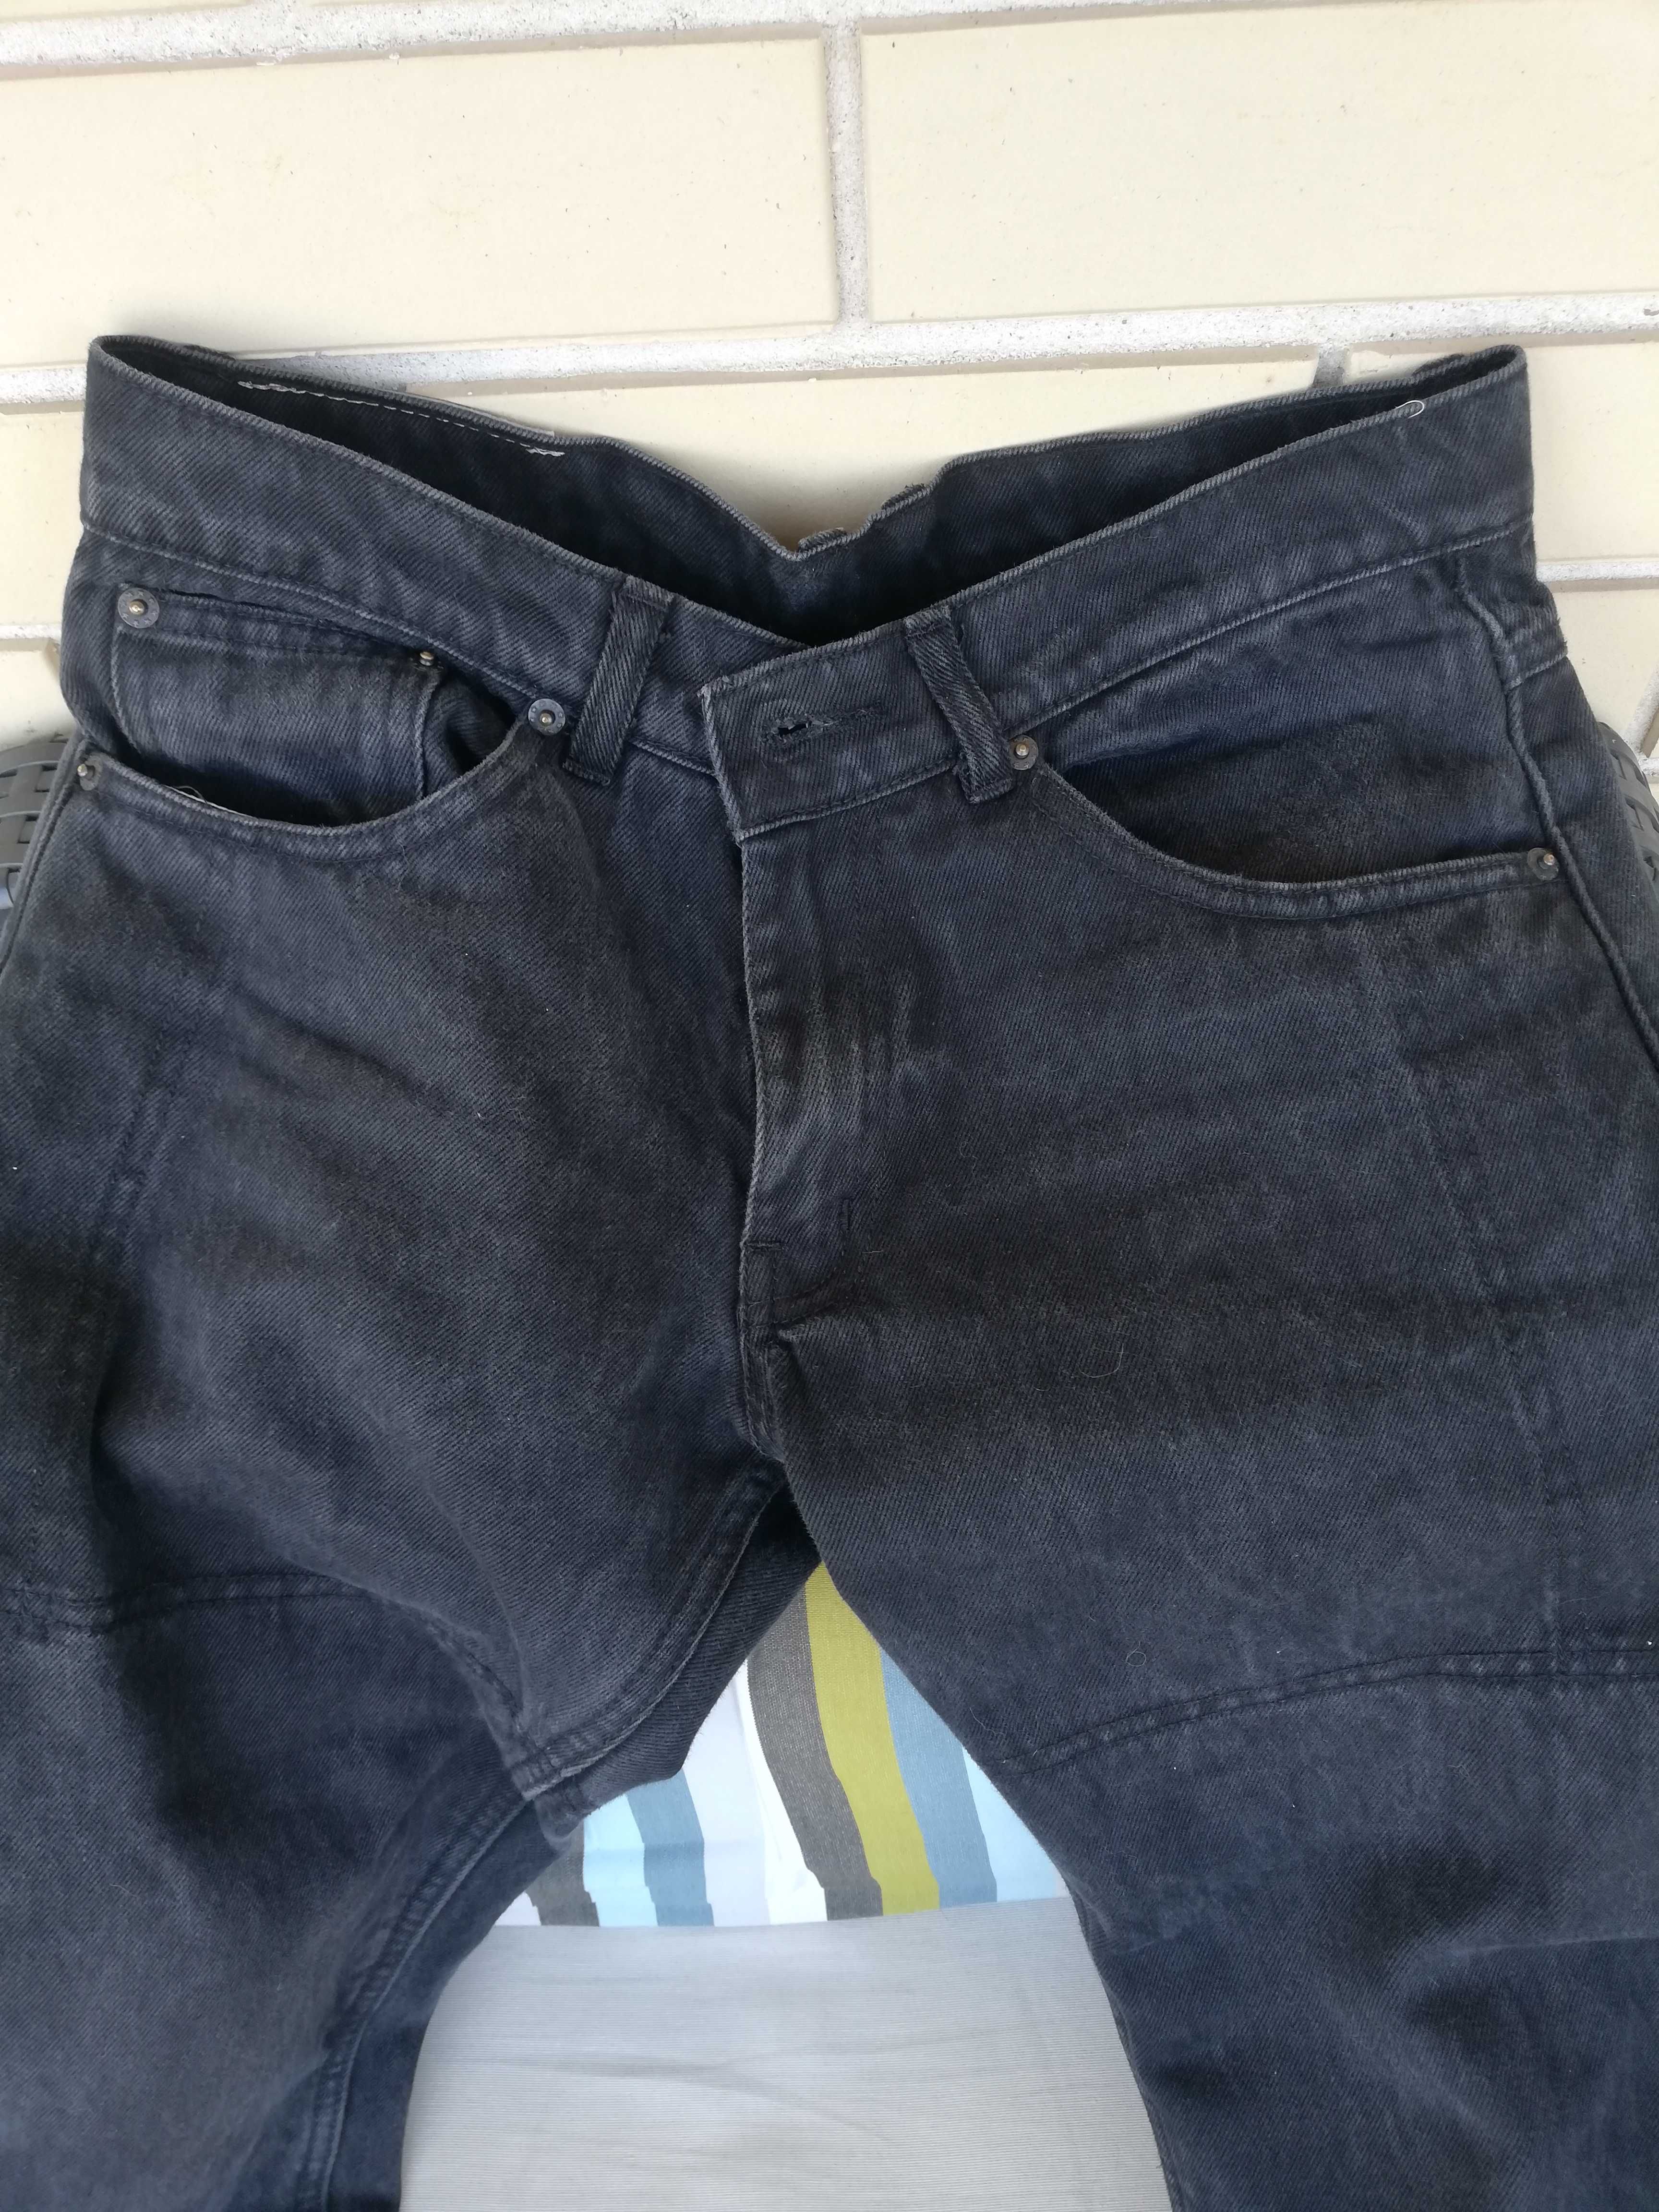 Calças moto ganga / jeans pretas marca Lovo Kevlar tamanho S / 28